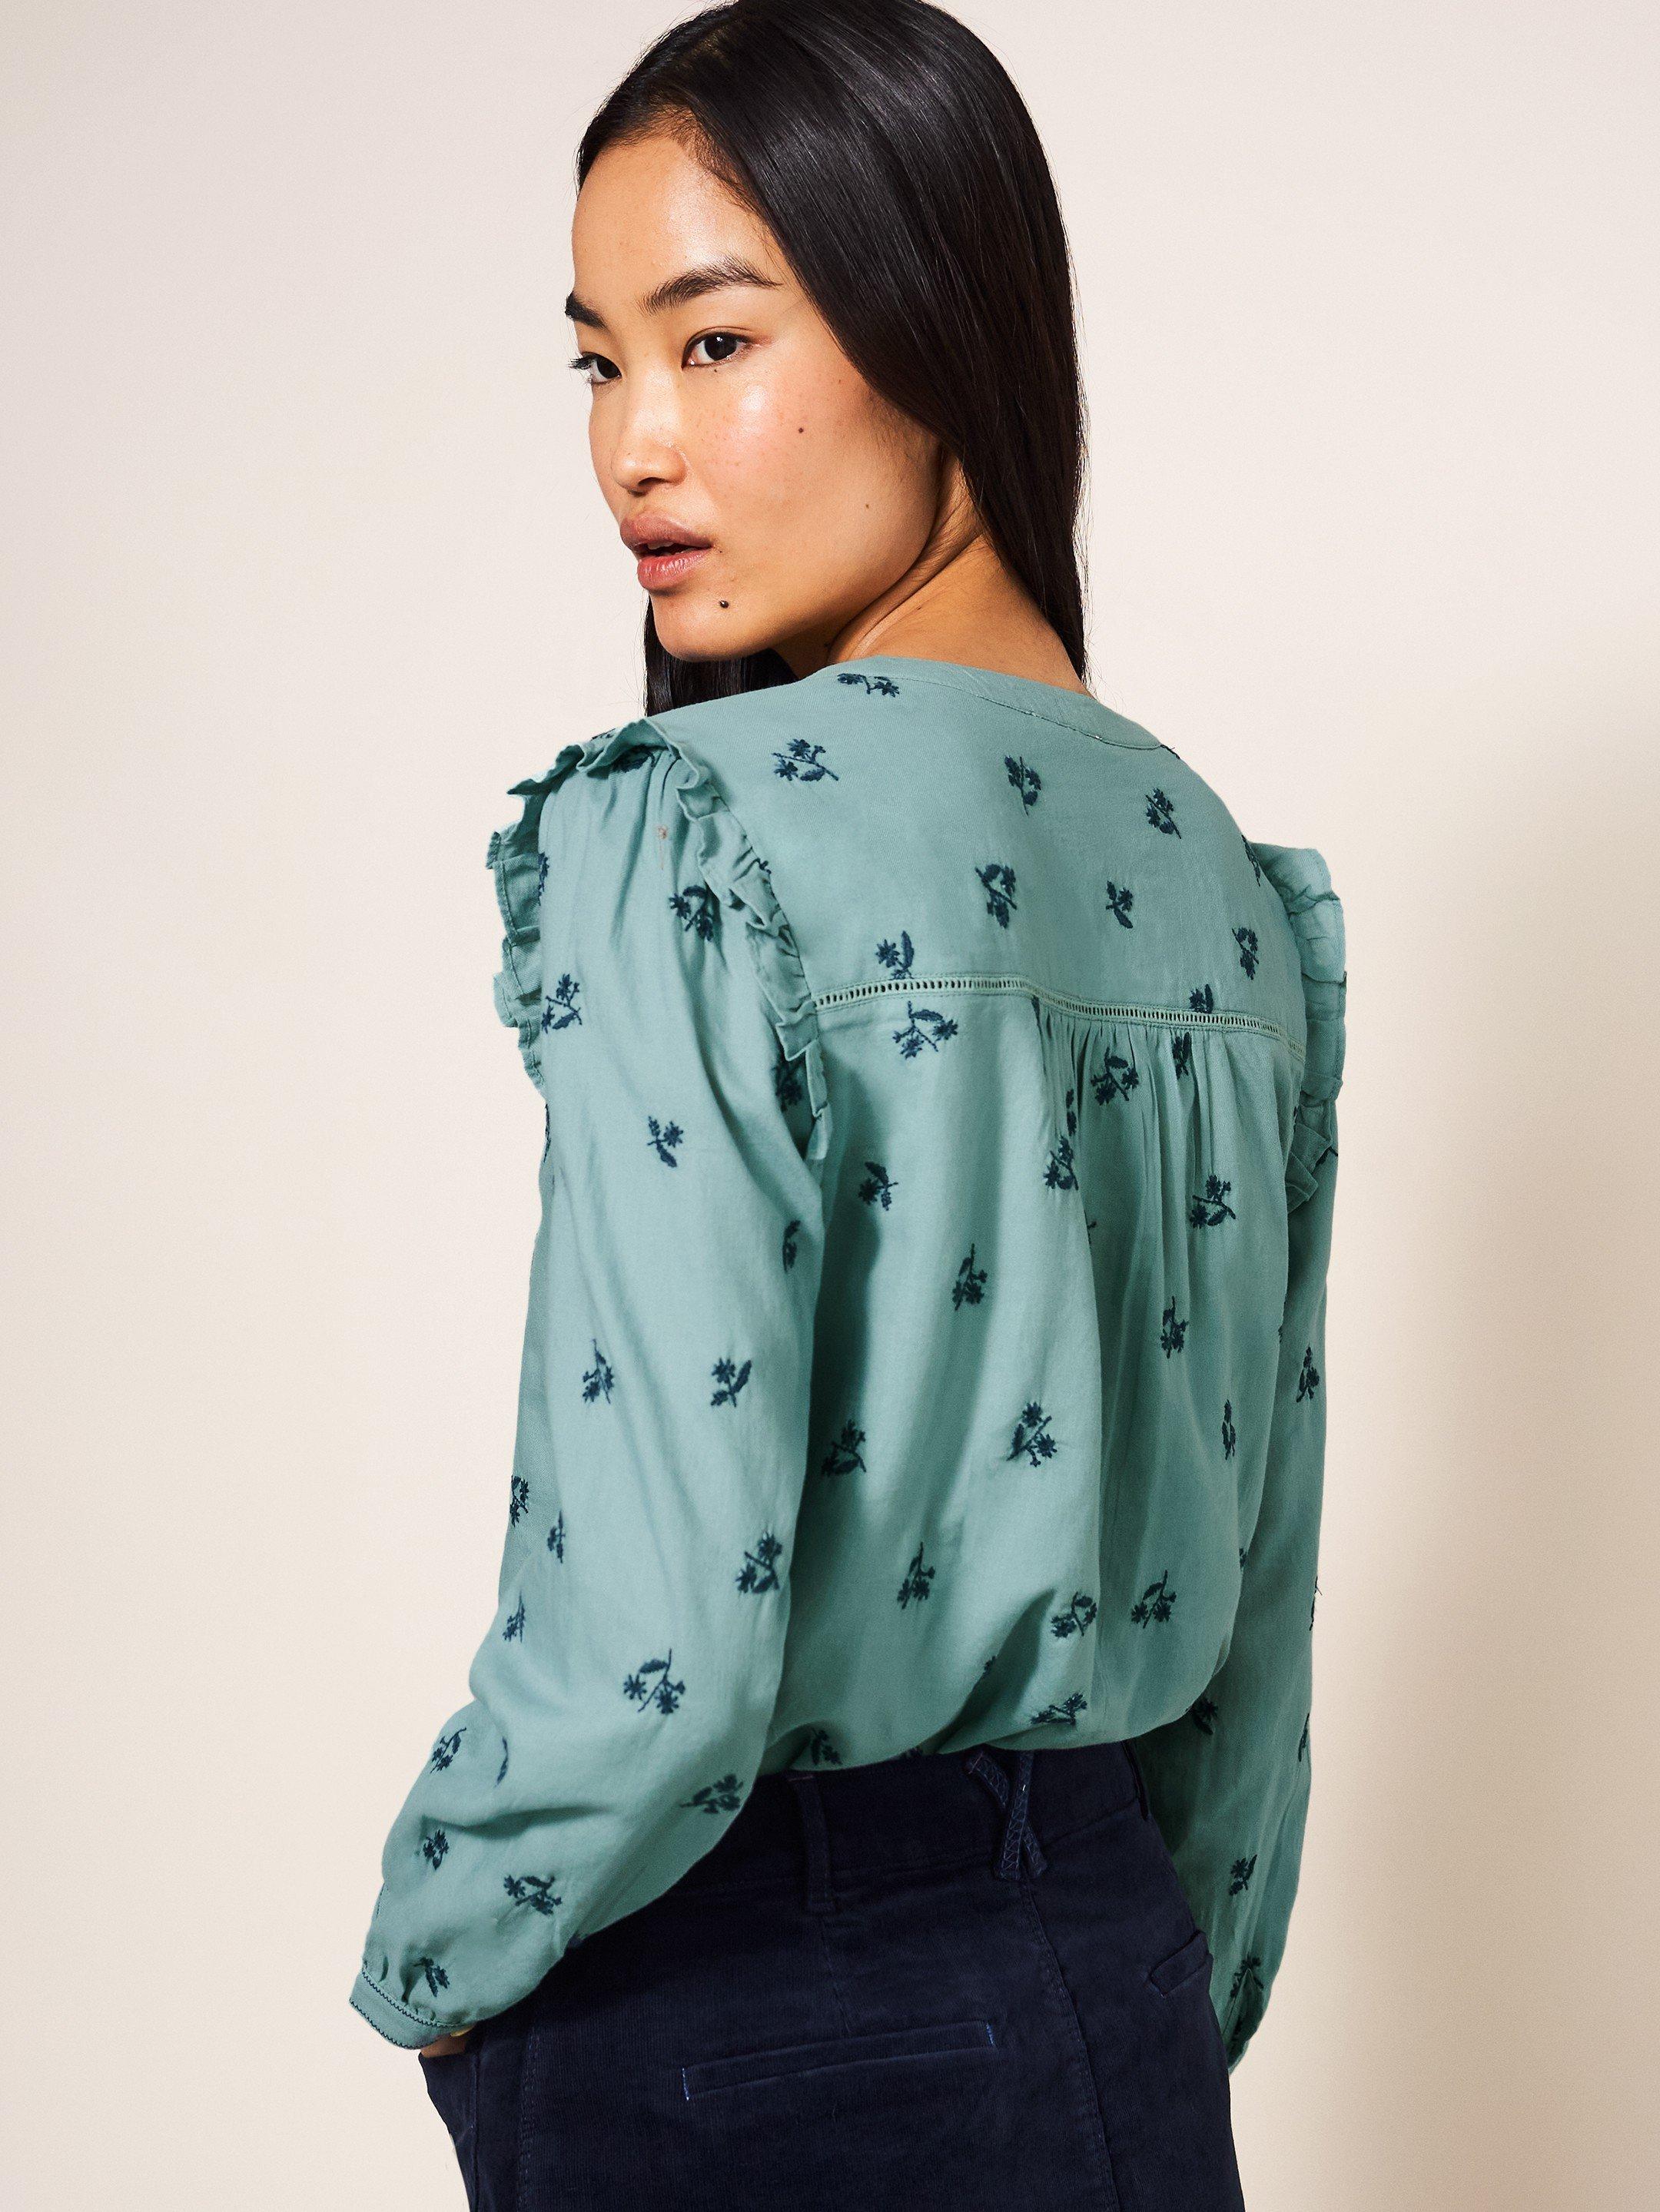 Florine Embroidered Shirt in TEAL MLT - MODEL BACK